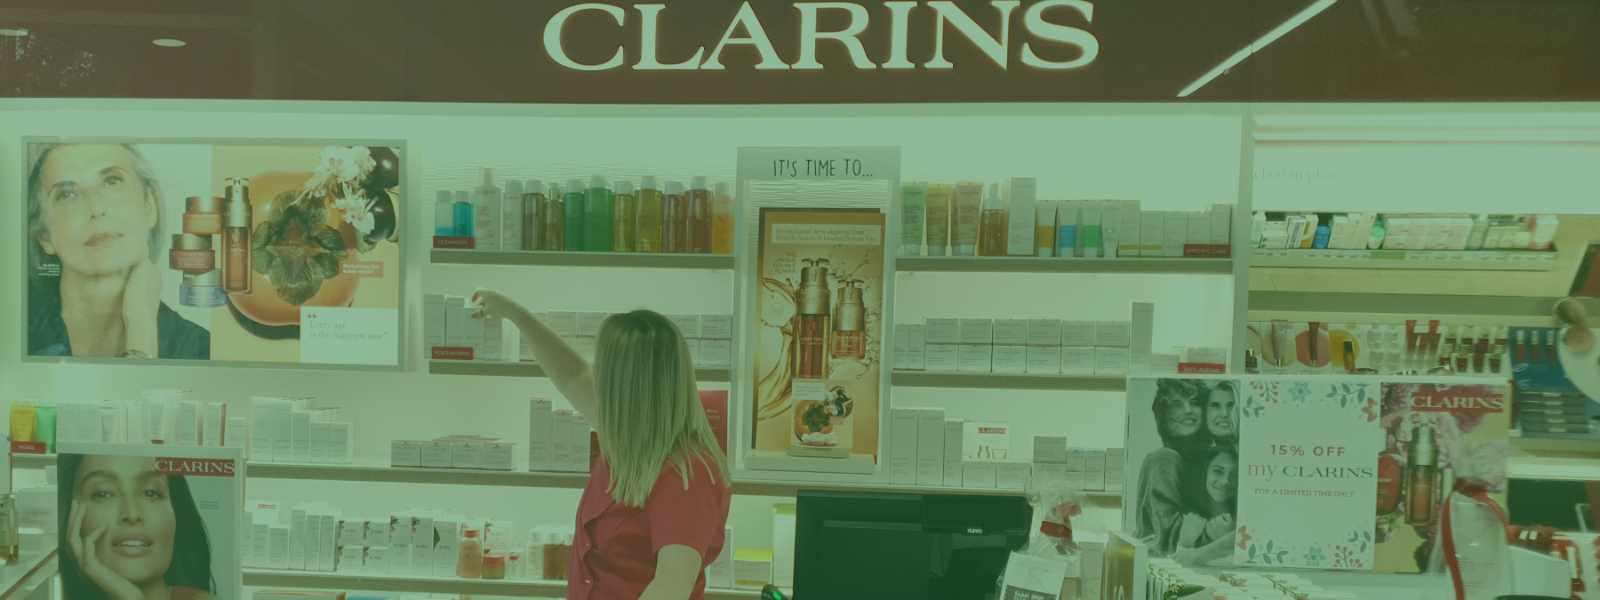 Clarins Skincare